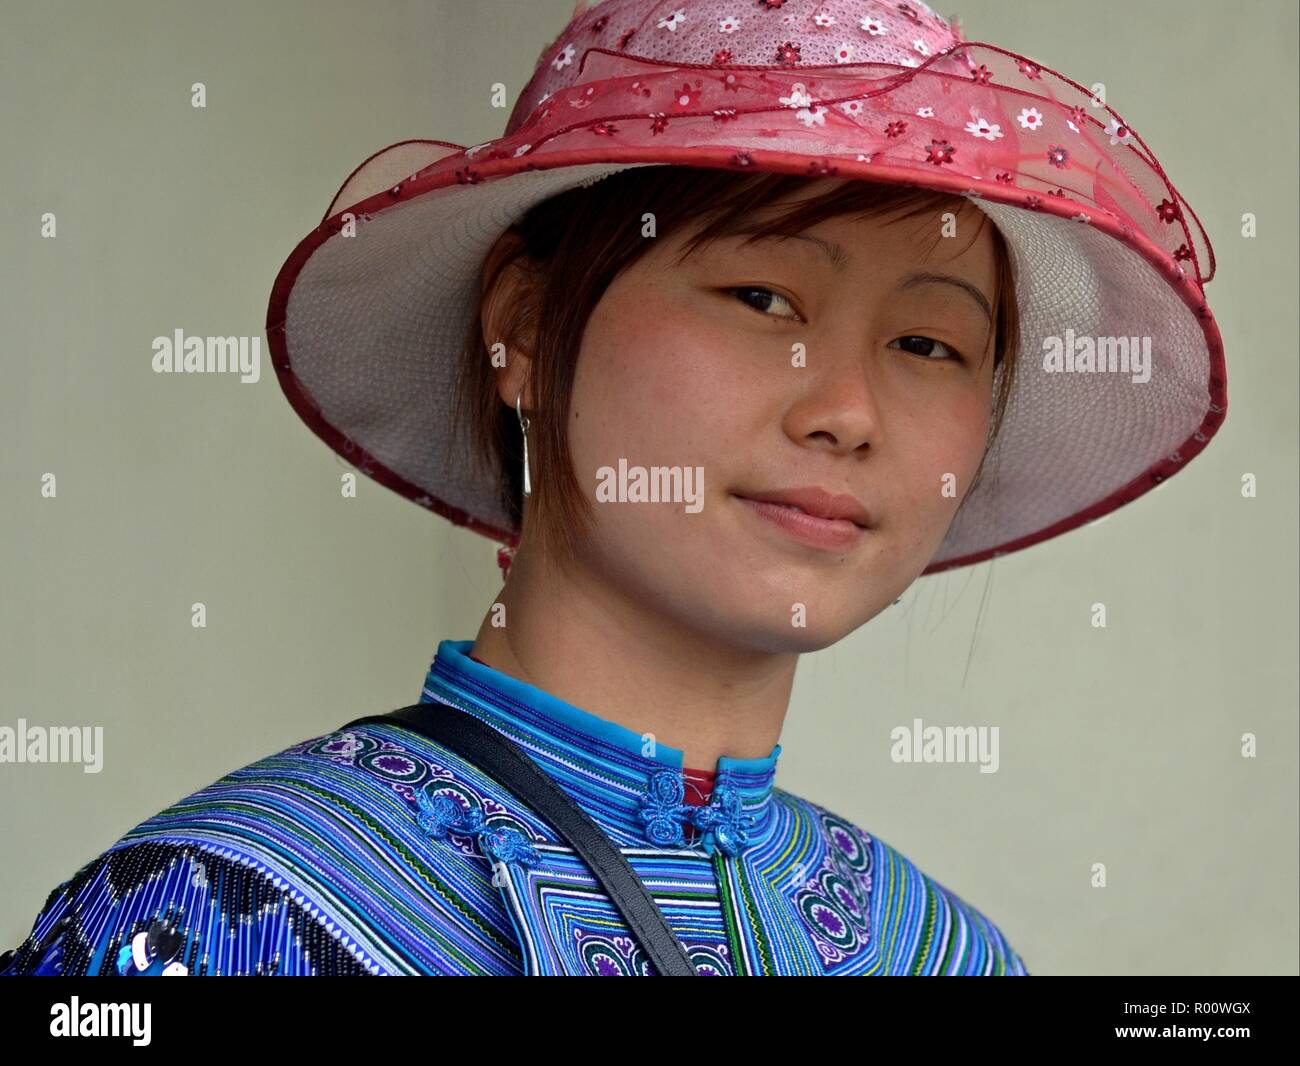 Junge vietnamesische H'Mong ethnische Minderheit Bergvolk Frau mit rosa Sonnenhut und bestickte traditionelle H'Mong Kleidung in Blau sieht in die Kamera. Stockfoto